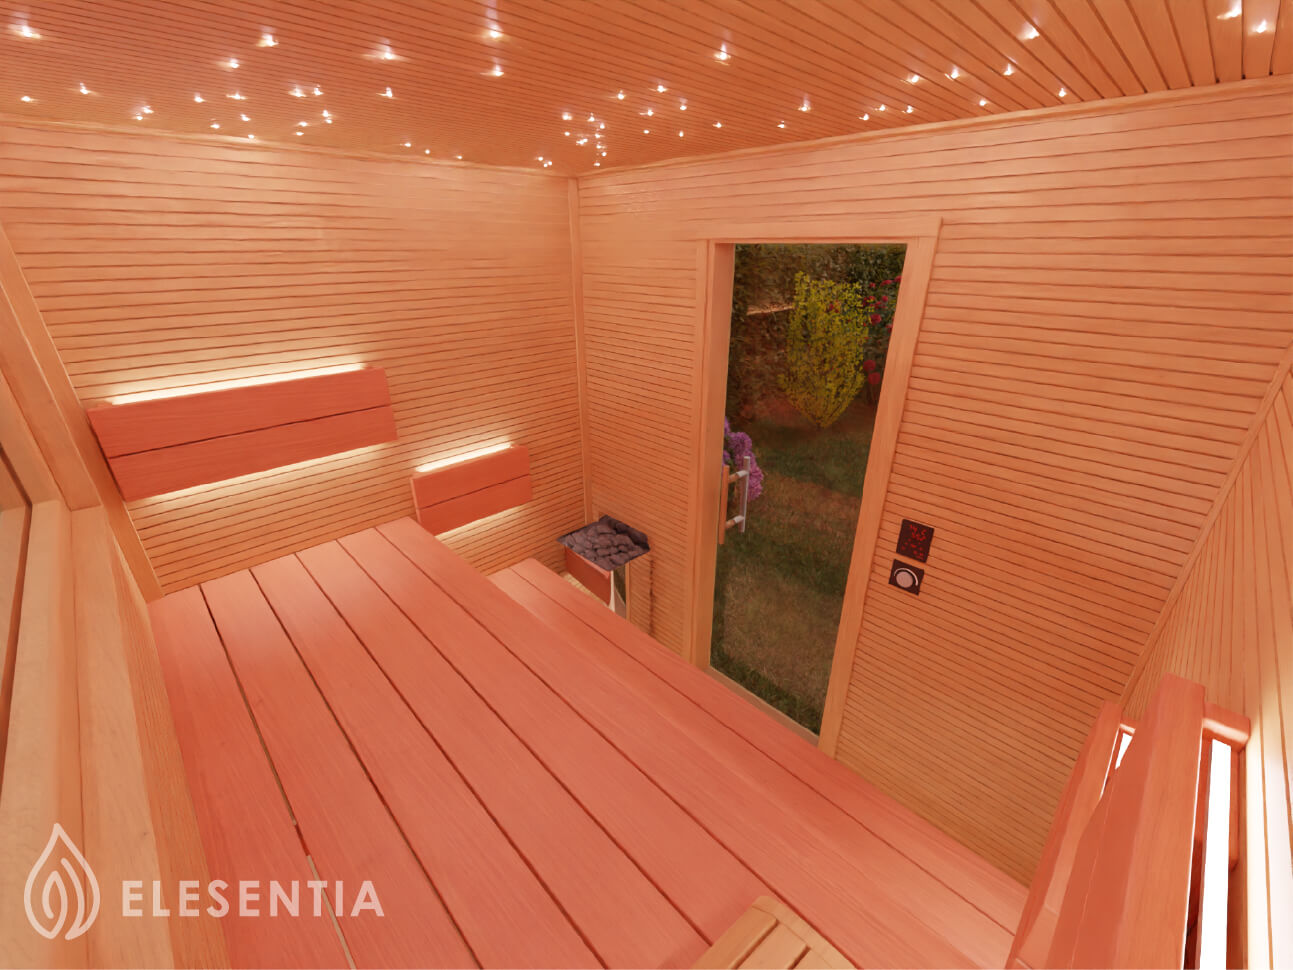 Finská sauna s hvězdnou oblohou